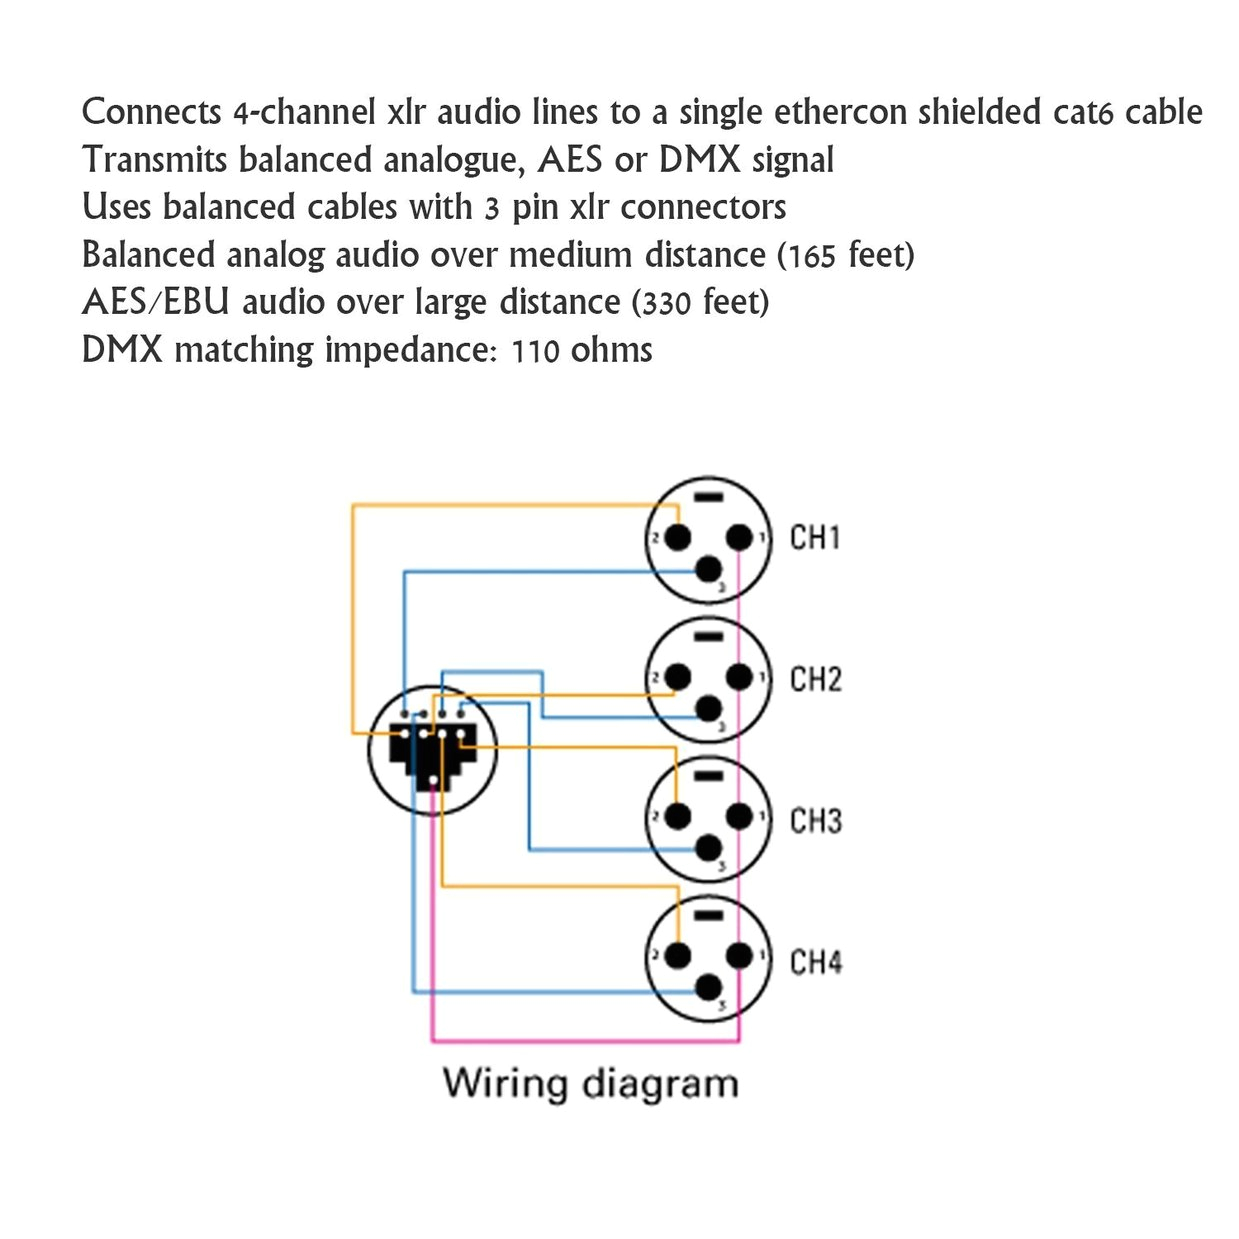 6 pin dmx wiring diagram wiring diagram 4 pin dmx wiring diagram free download wiring diagram